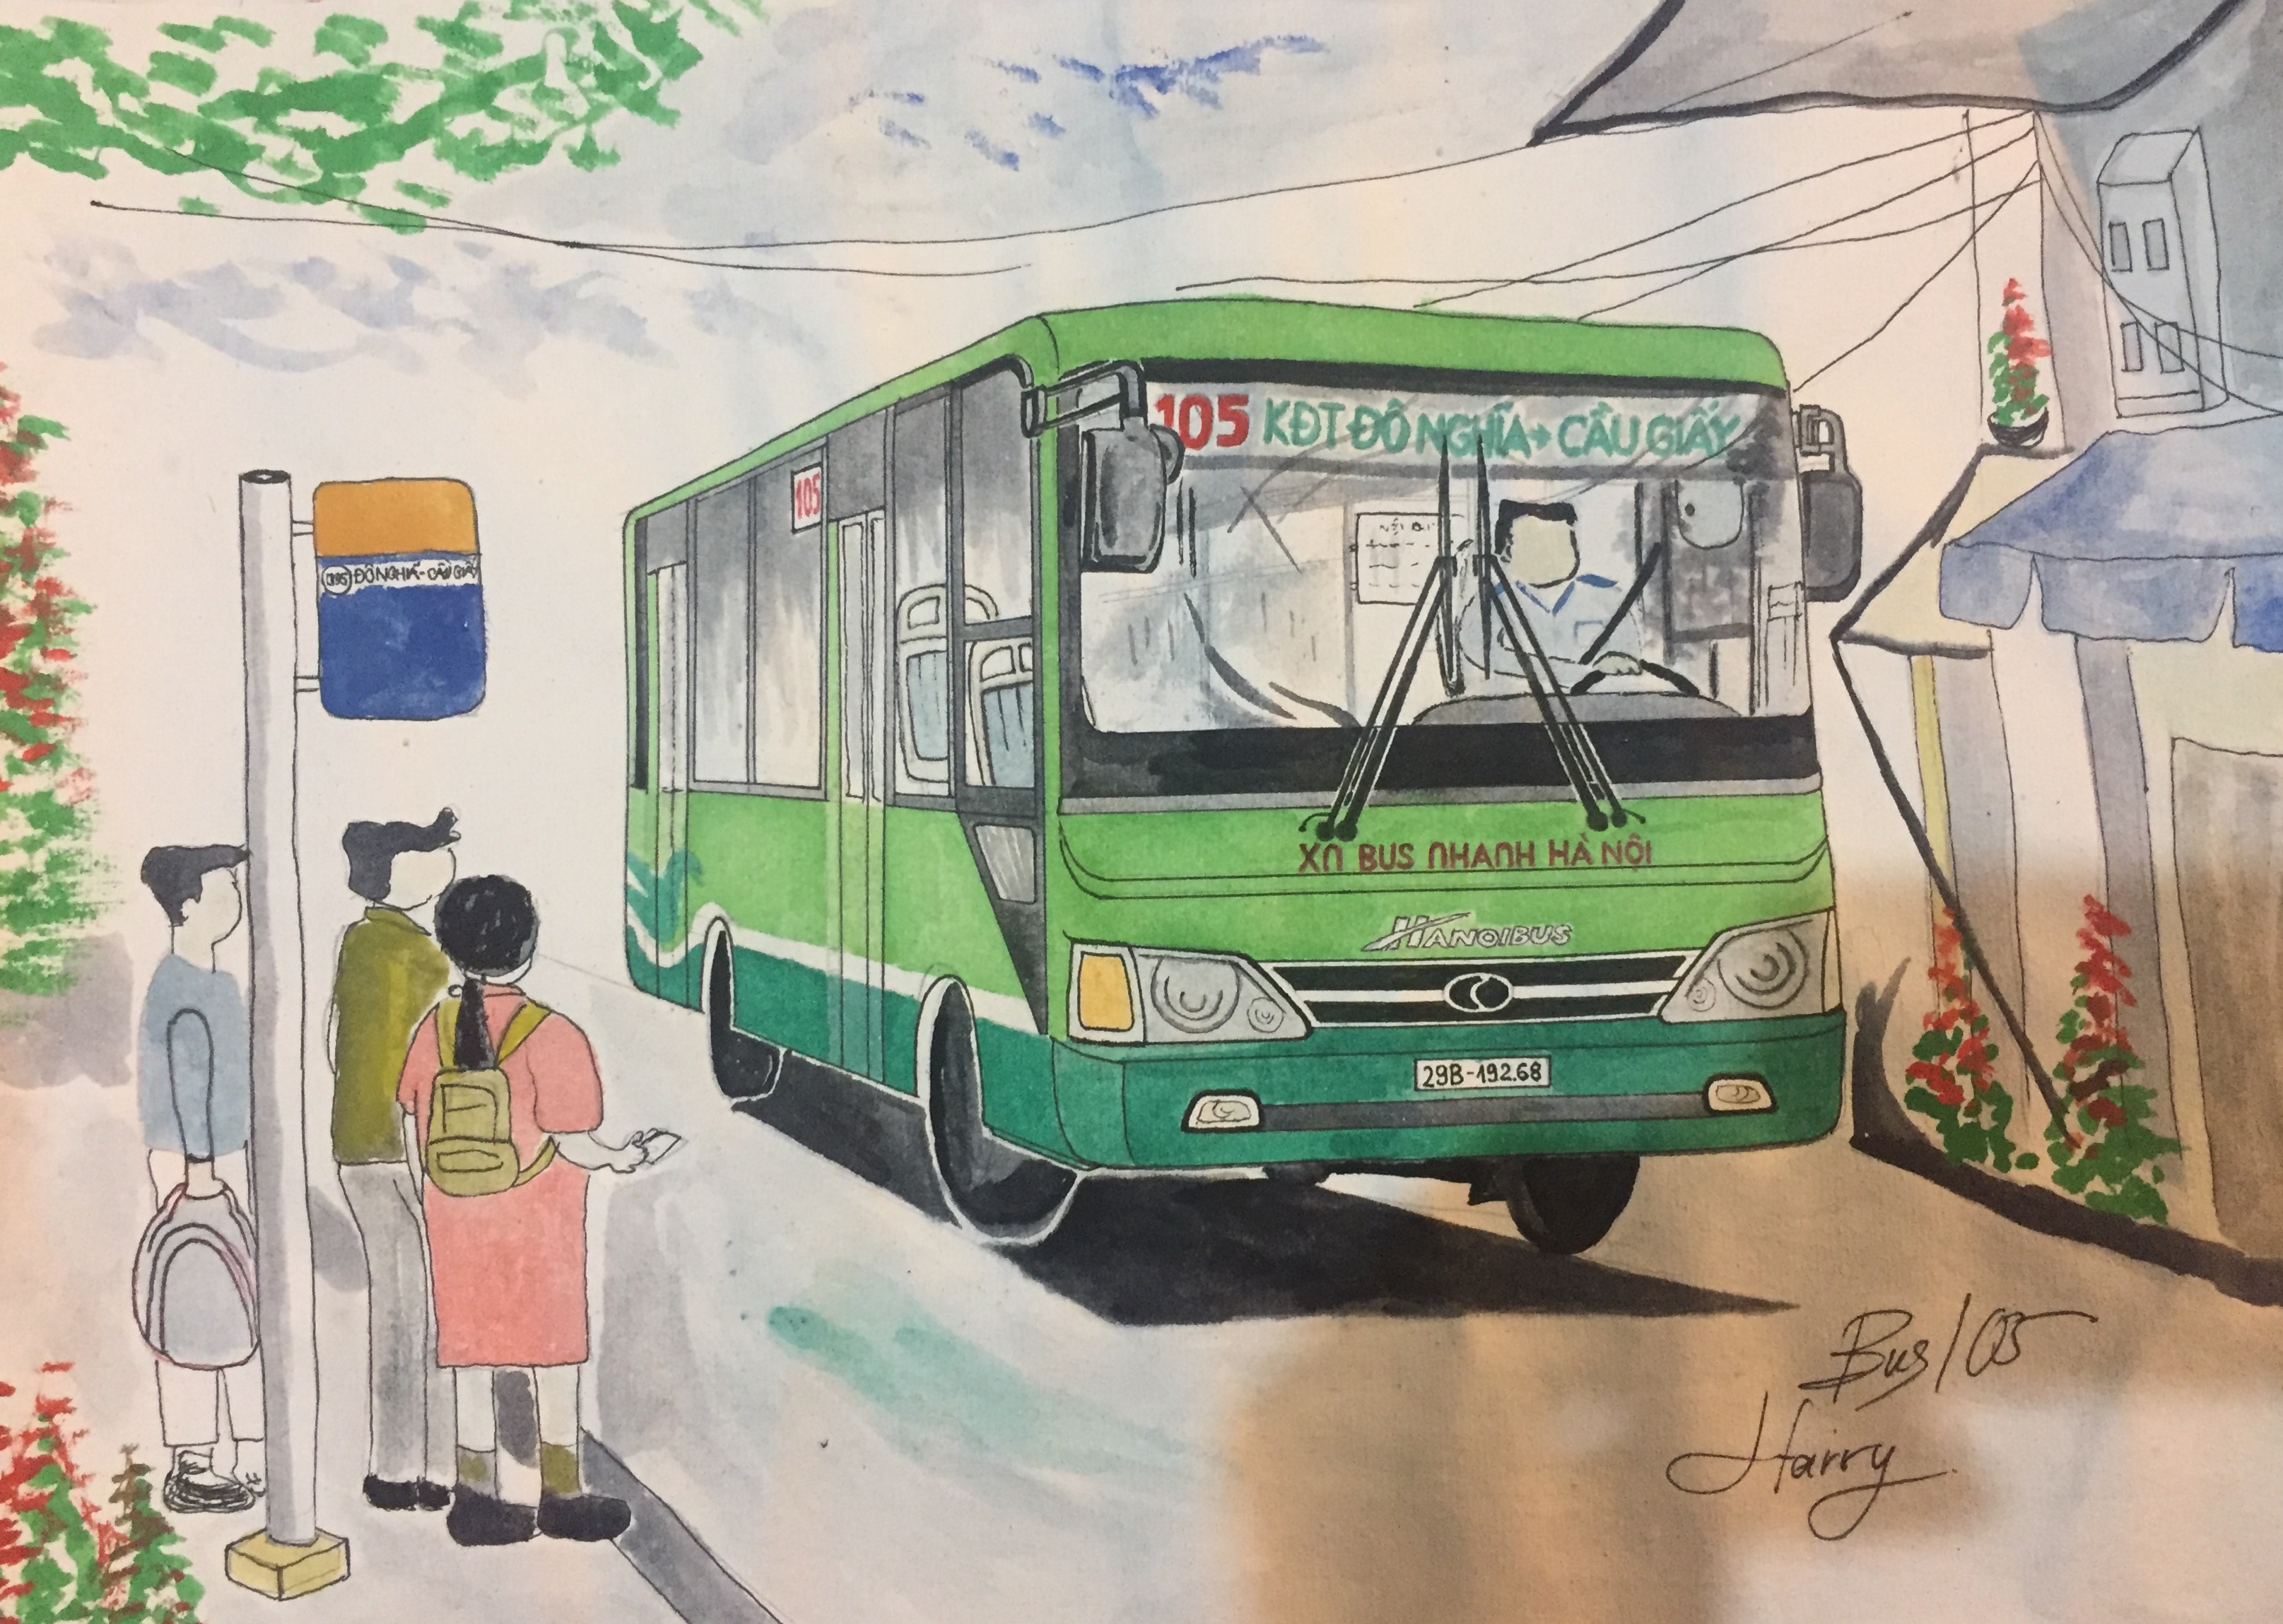 Hà Nội là một thủ đô lịch sử với nhiều địa điểm nổi tiếng, trong đó có xe buýt. Thưởng thức tranh vẽ xe buýt Hà Nội sẽ đưa bạn vào một hành trình khám phá vẻ đẹp cổ kính của thành phố.